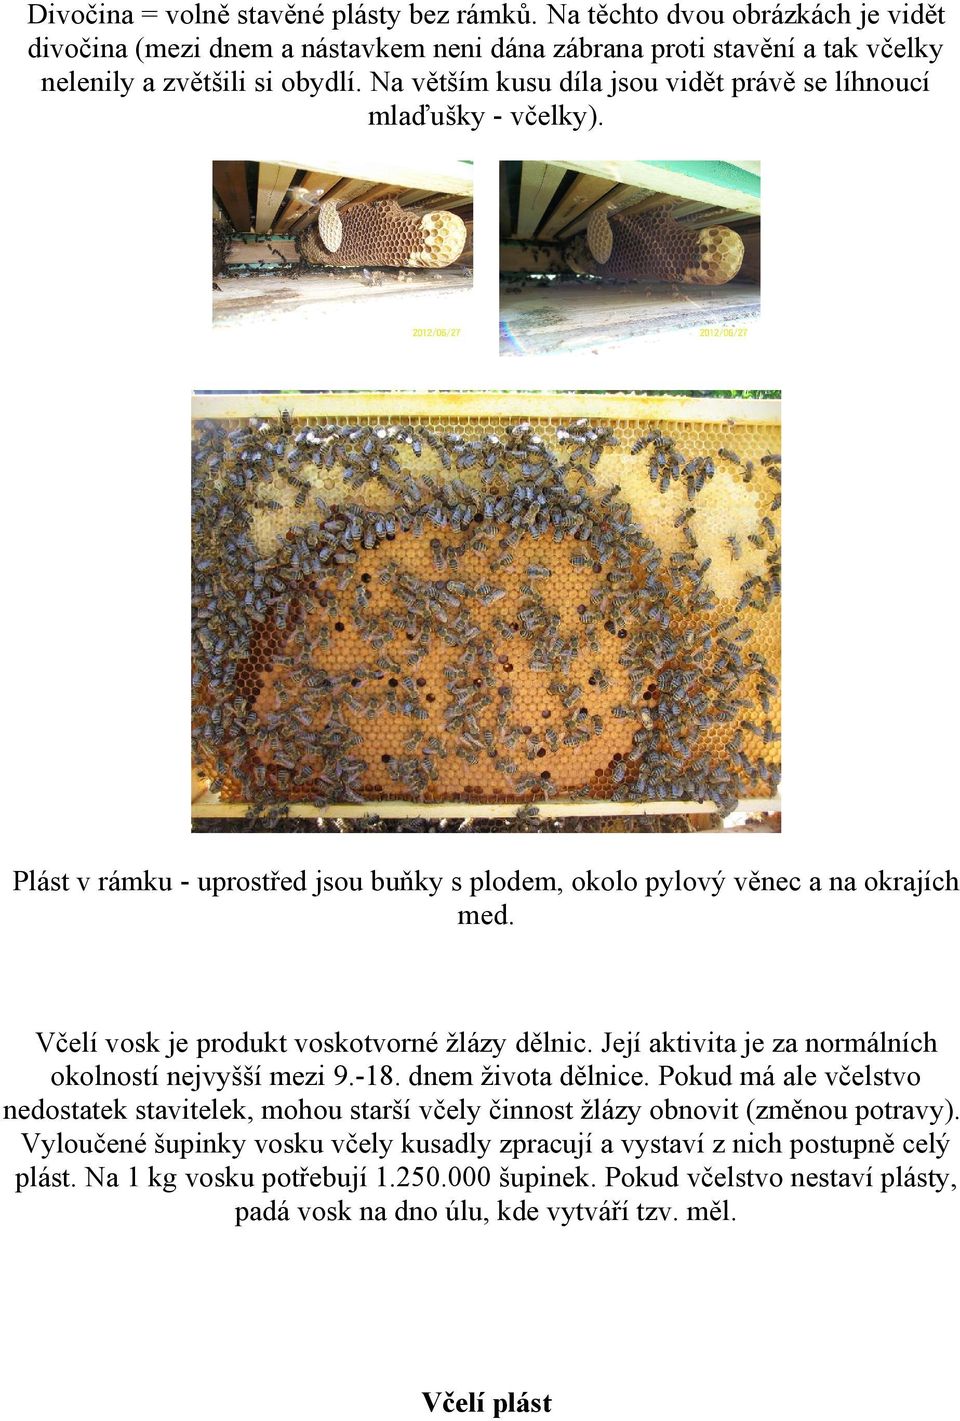 Včelí vosk je produkt voskotvorné žlázy dělnic. Její aktivita je za normálních okolností nejvyšší mezi 9.-18. dnem života dělnice.